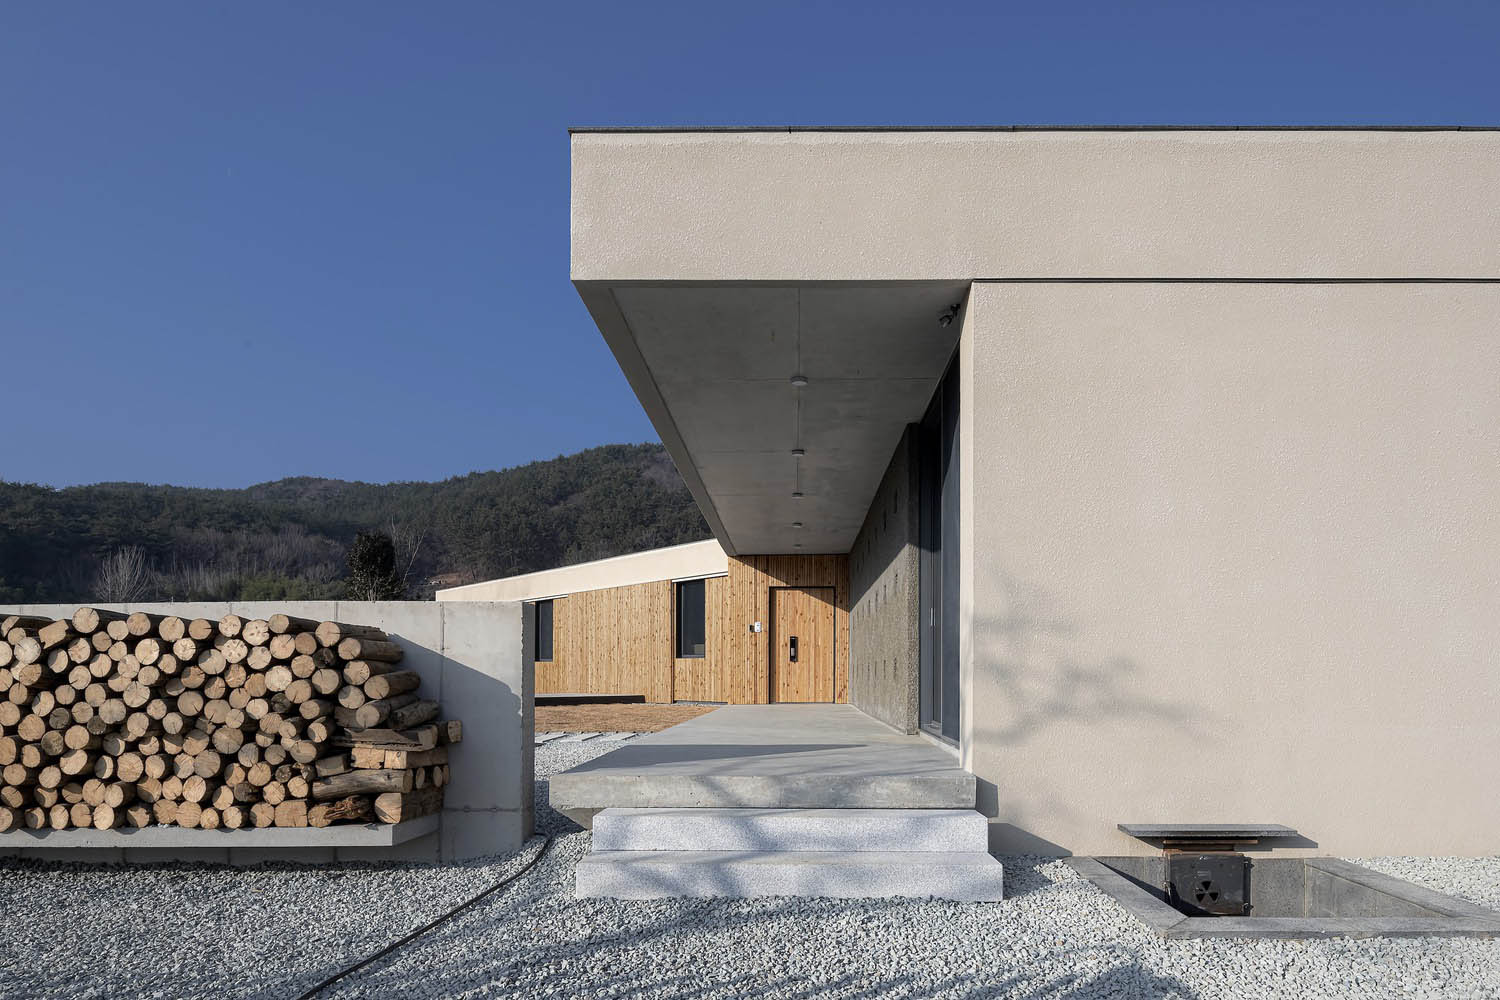 TURTLE Architects,韩国,住宅设计,200㎡,国外住宅设计案例,极简风格,乡村住宅,独栋住宅